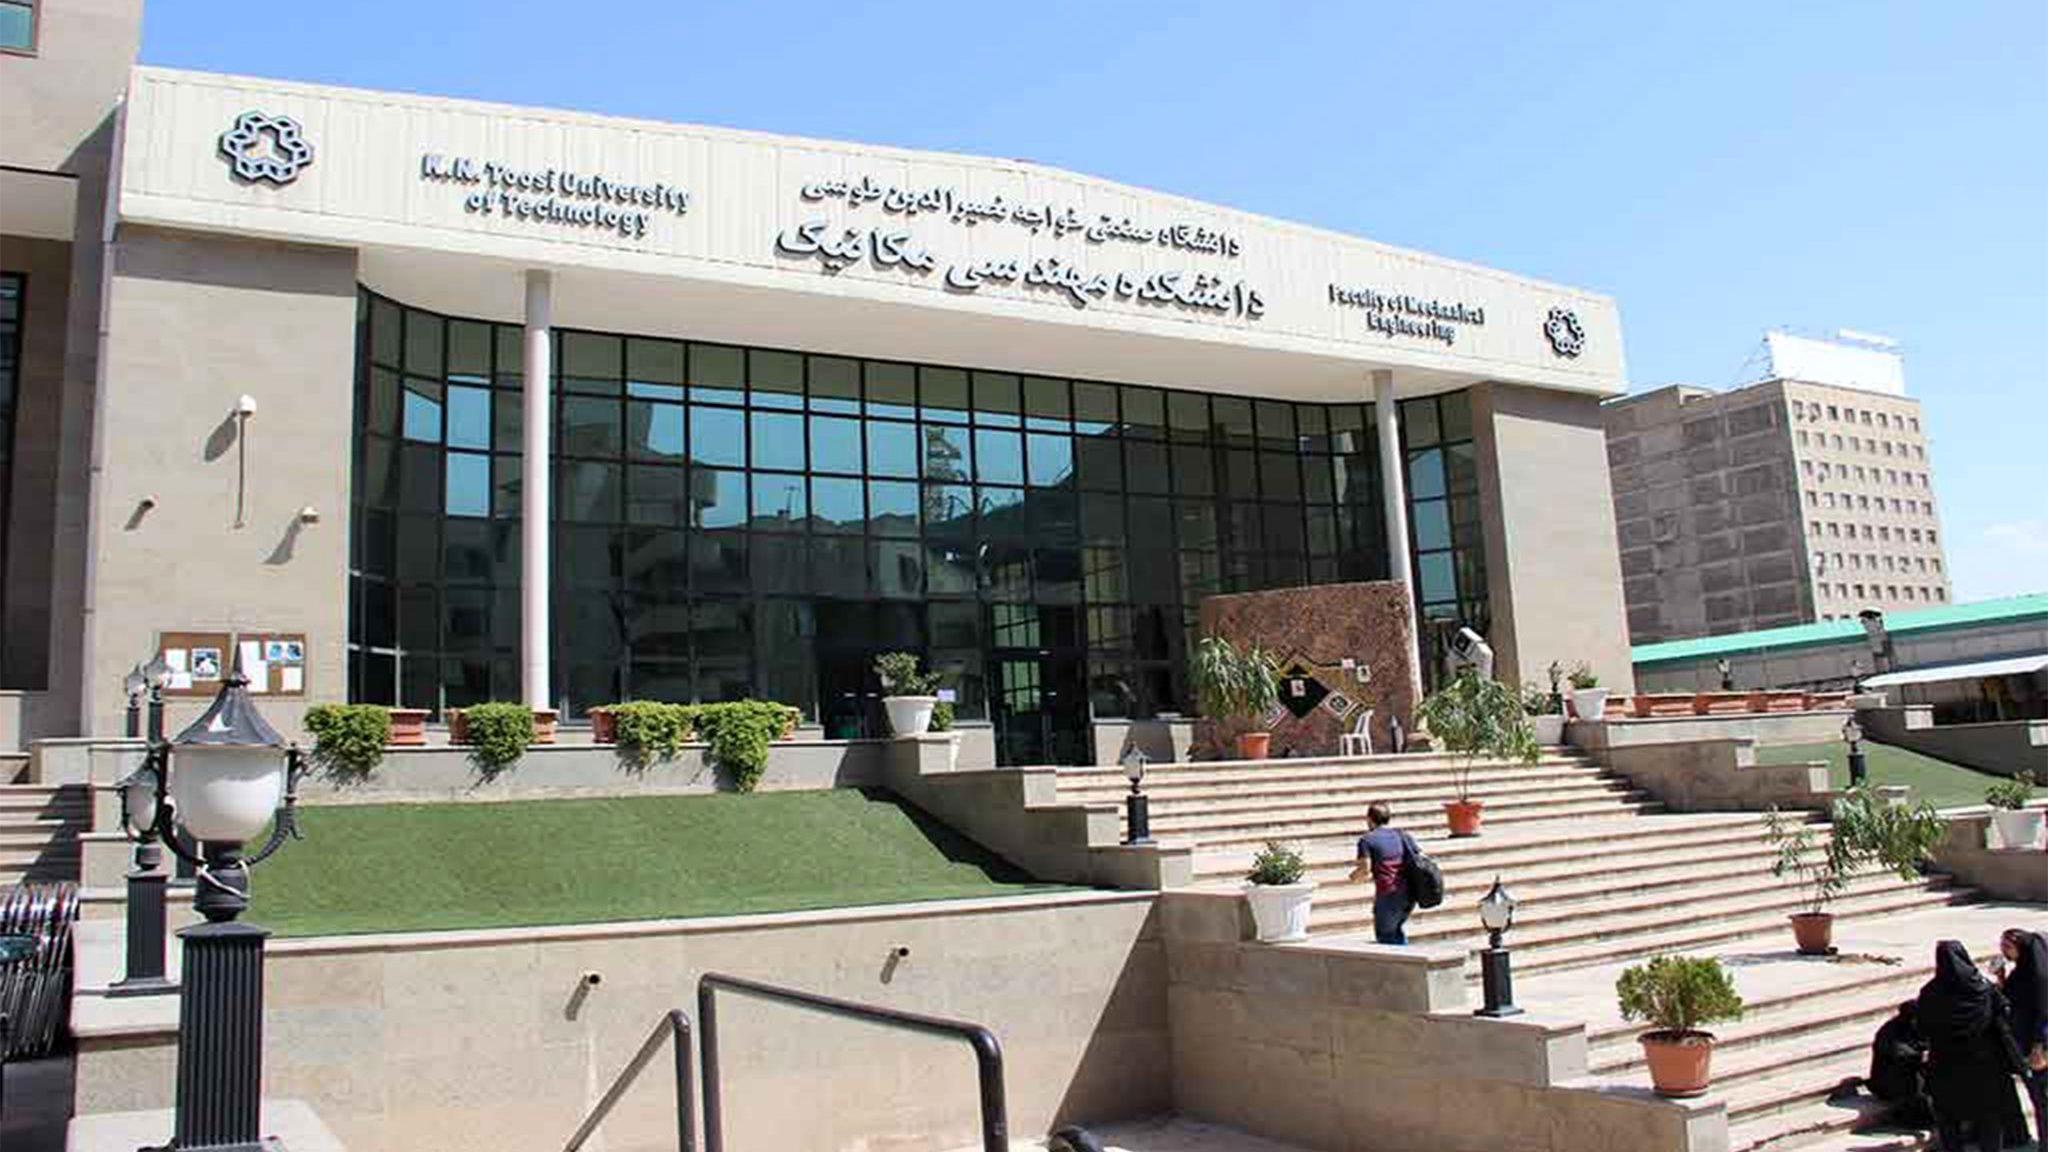 دانشگاه خواجه نصیر: ورود دانشجویان به این دانشکده ممنوع!
